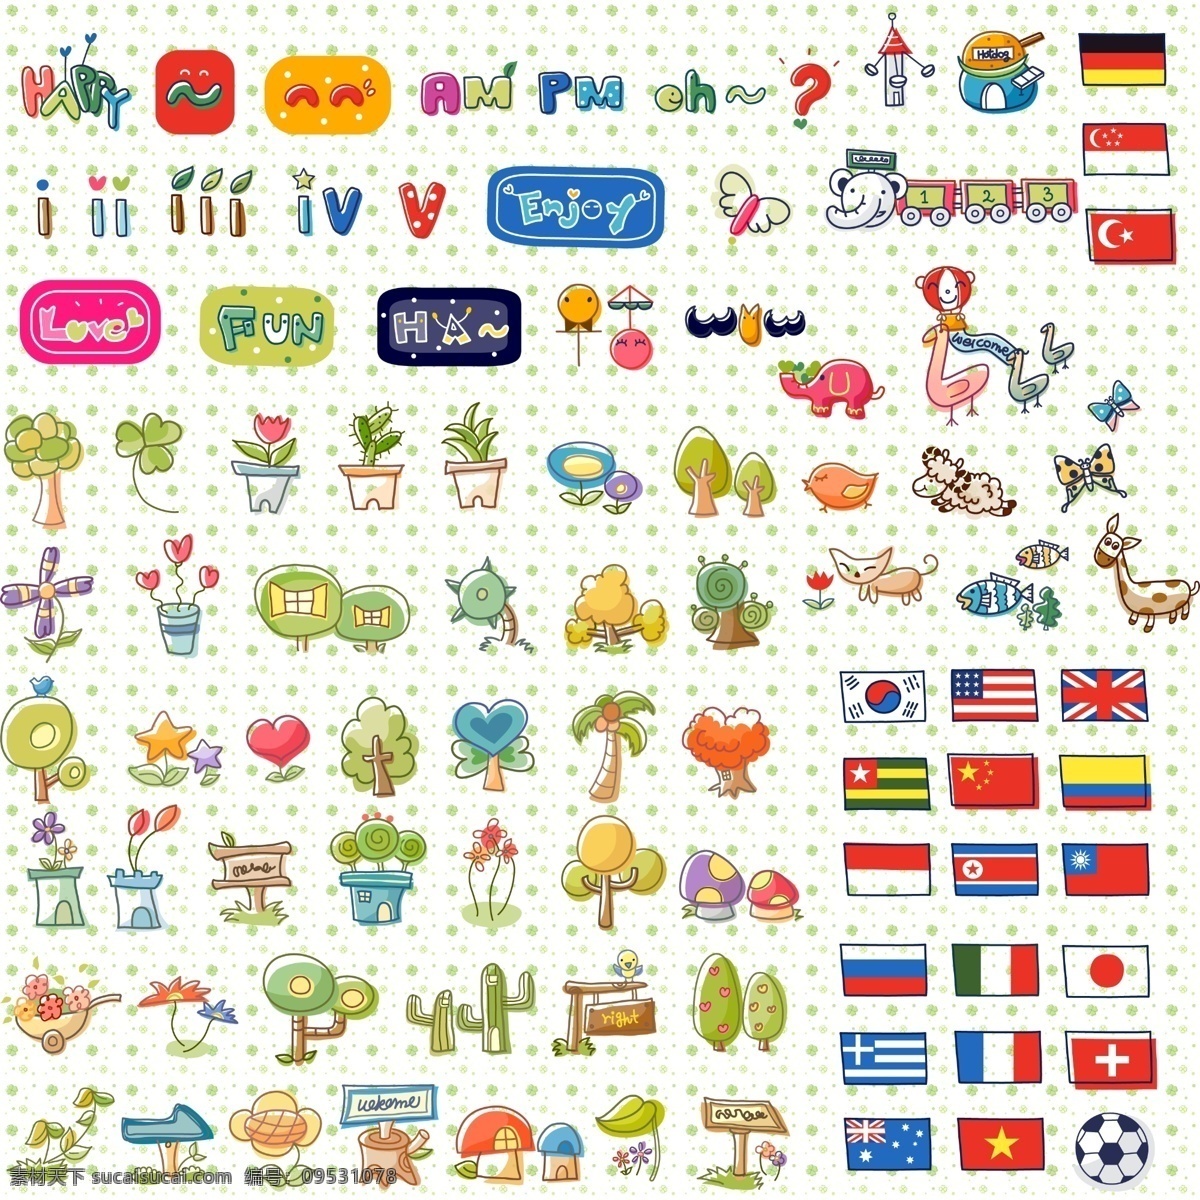 分层 标识 动物 国旗 韩国 卡通 可爱 生活用品 小 物 模板下载 可爱韩国小物 物件 图标 线条 手绘 植物 字母 源文件 矢量图 艺术字